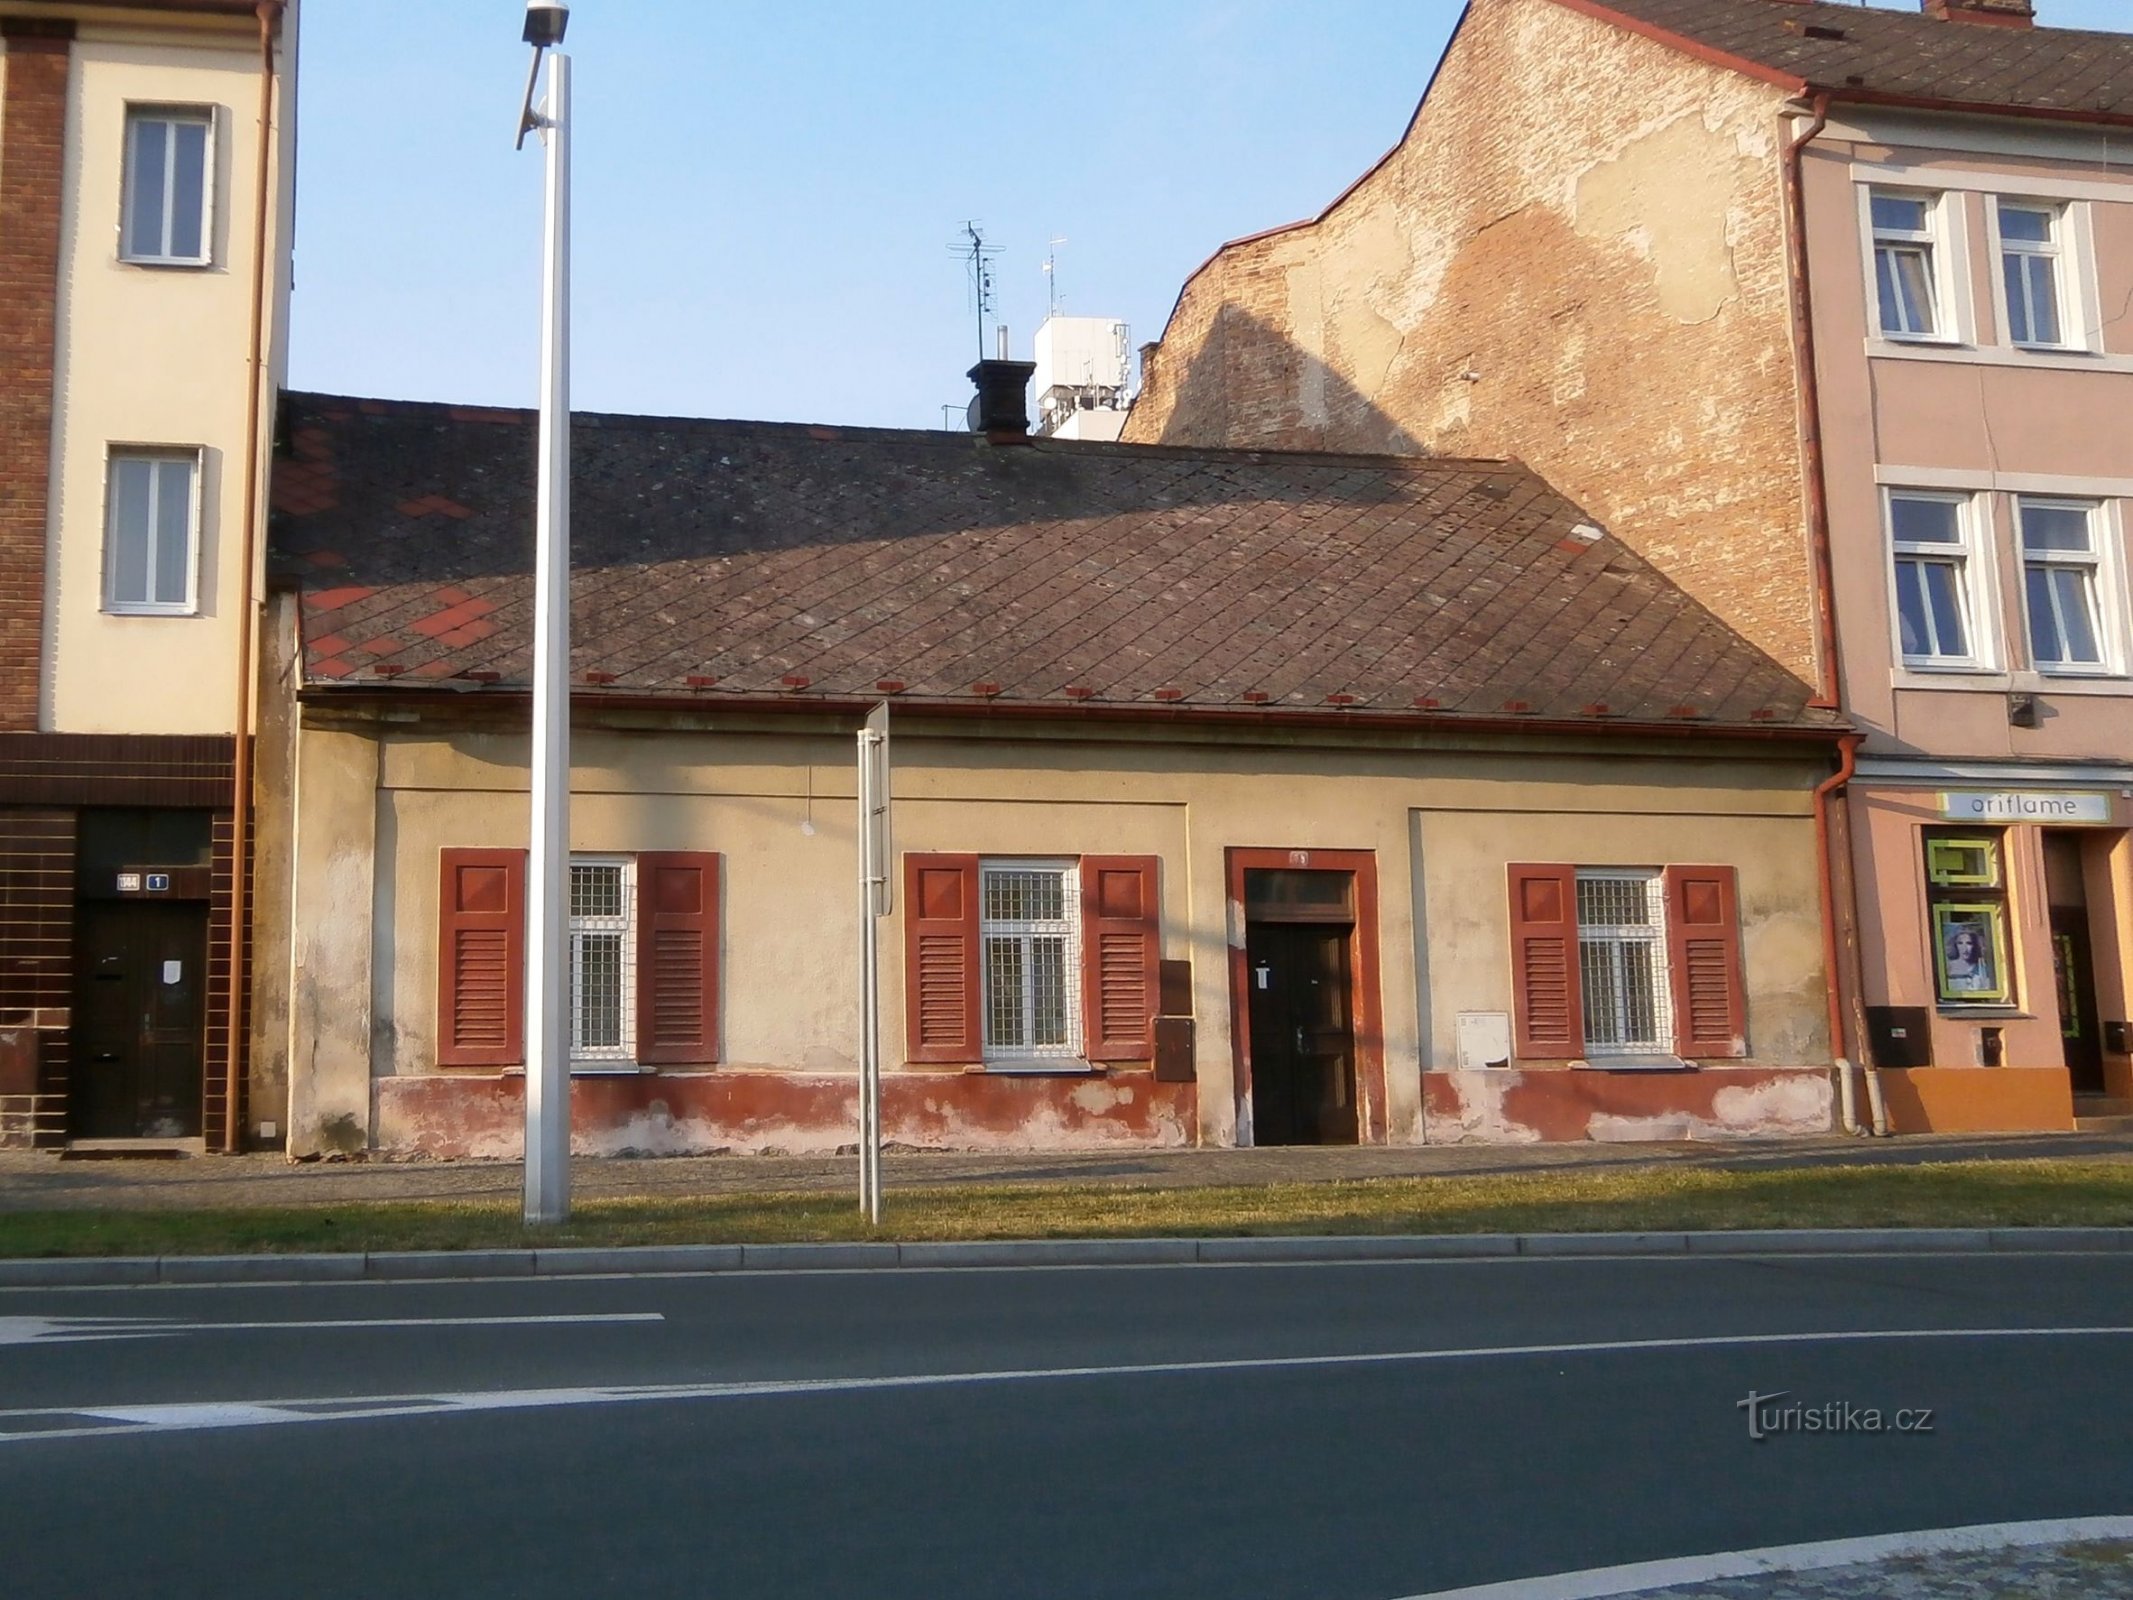 Station Nr. 78 (Hradec Králové, 27.7.2014)